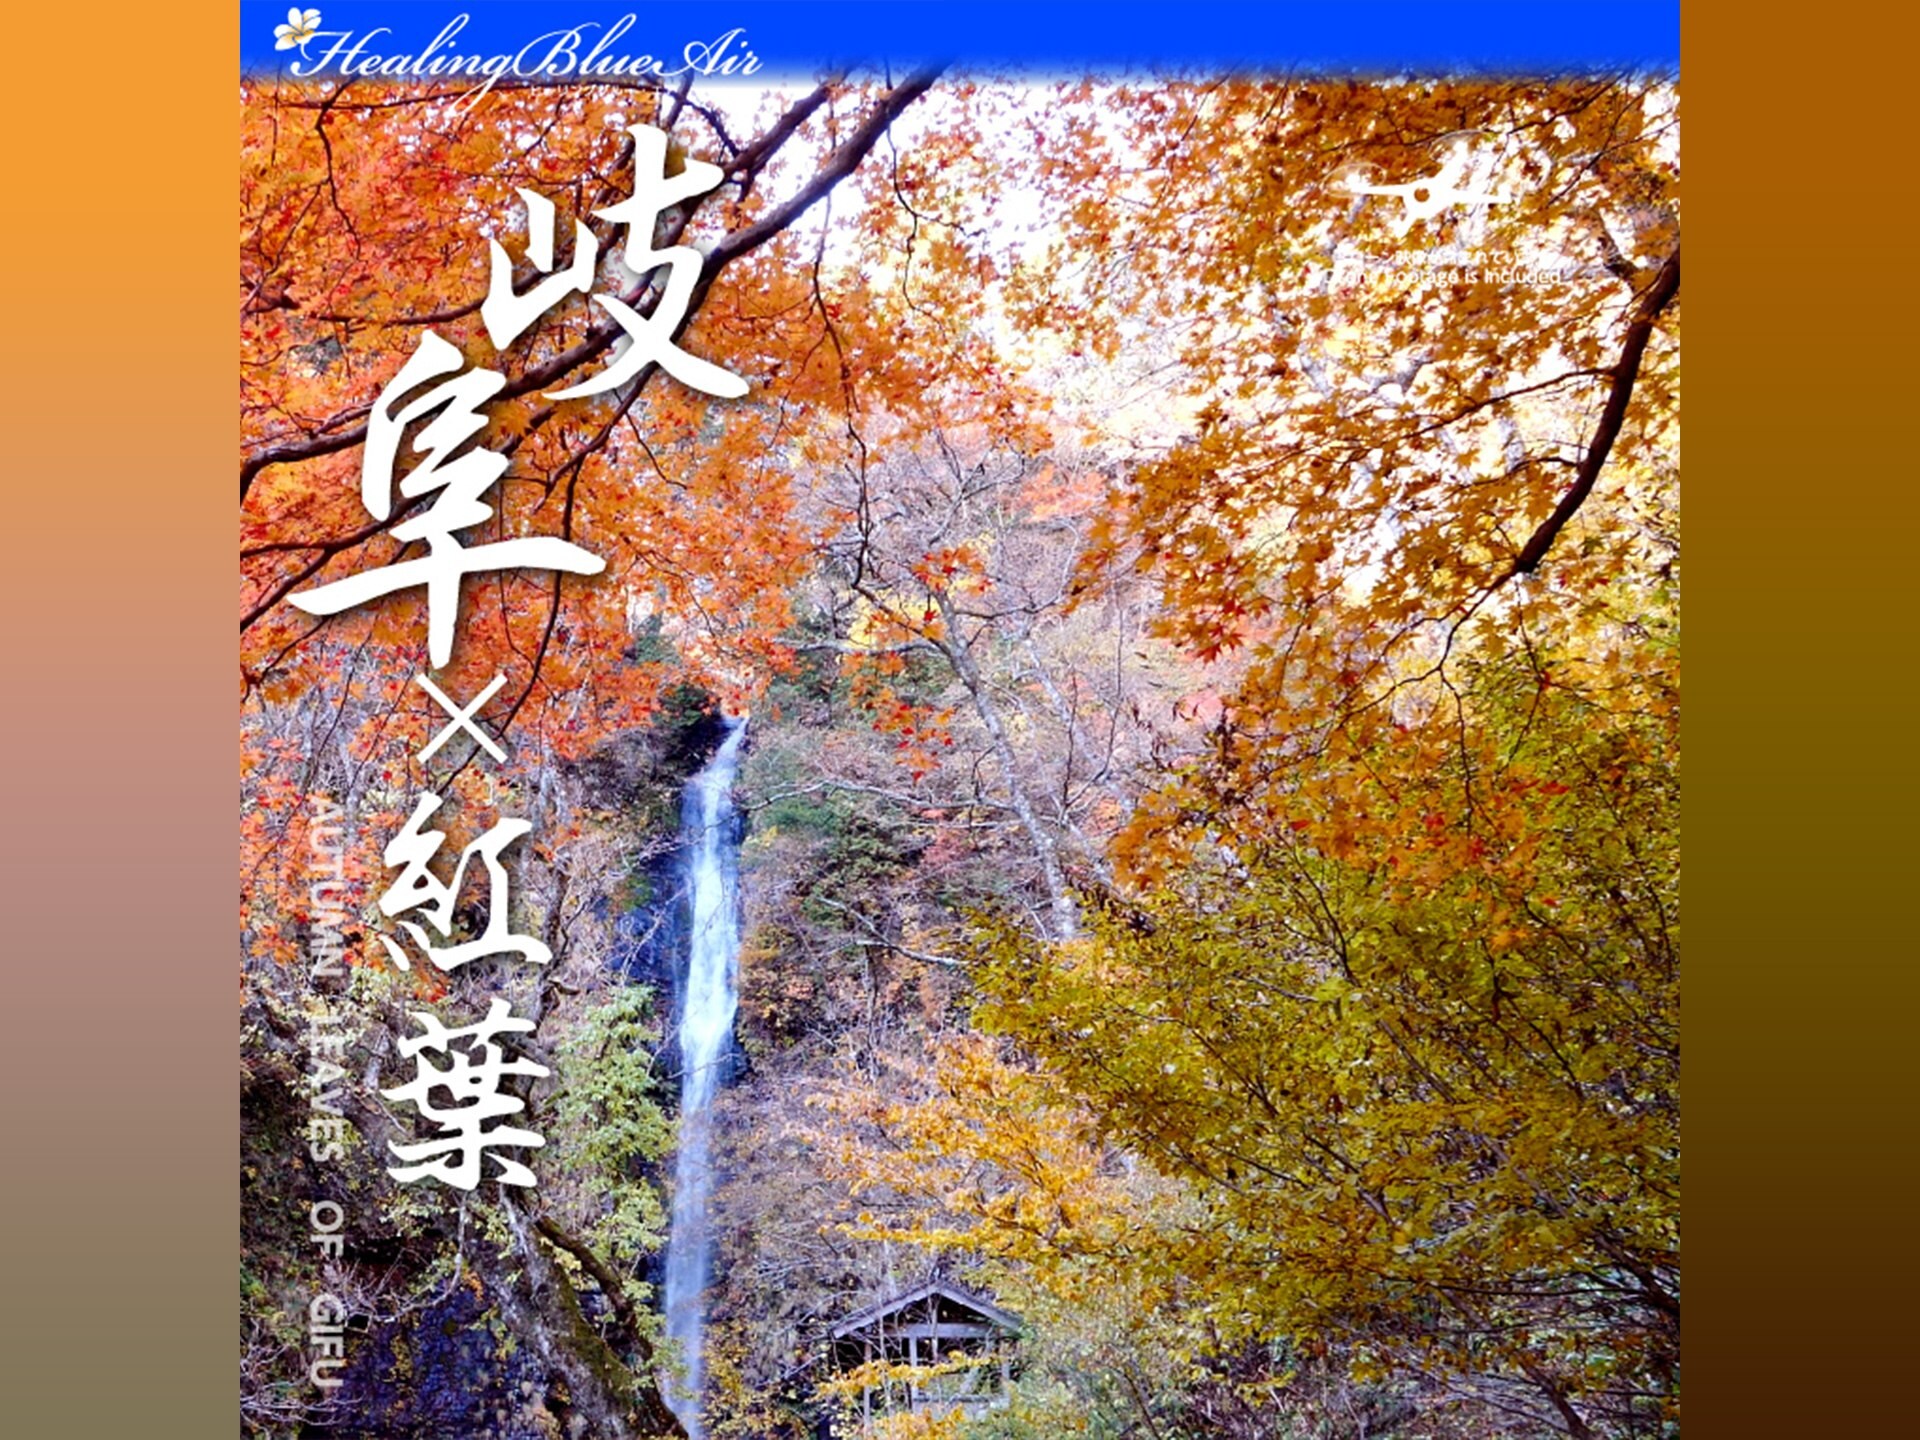 趣味 その他 Healing Blue Air ヒーリングブルー エア 岐阜 紅葉 Autumn Leaves Of Gifu の動画 初月無料 動画配信サービスのビデオマーケット